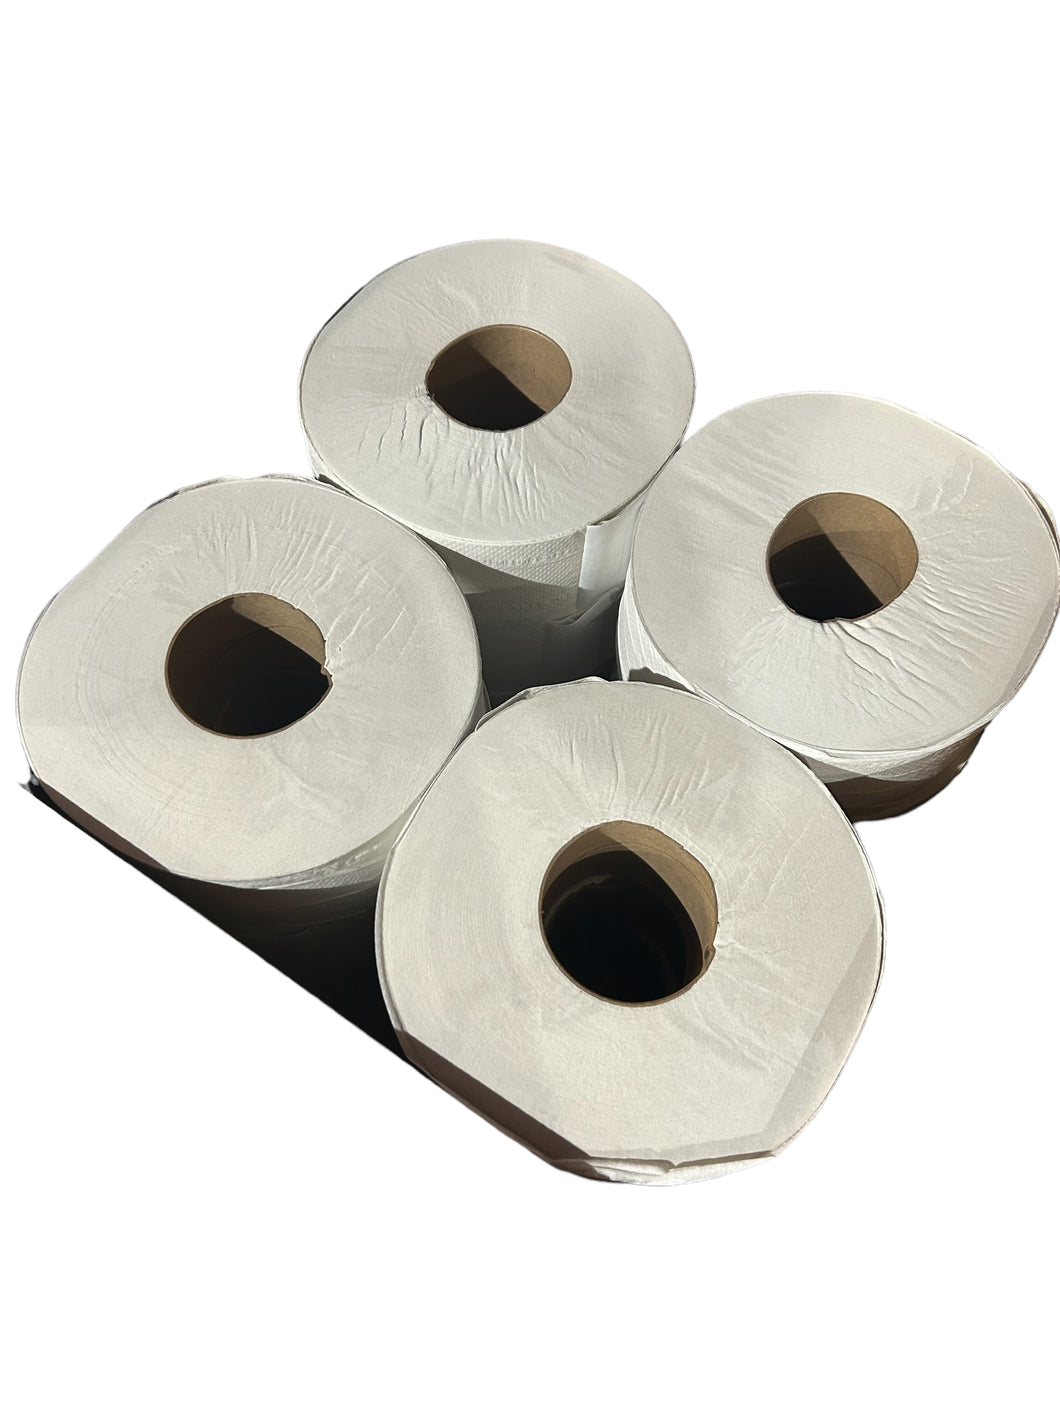 TOUGH GUY, 31KY17, Toilet Paper, 2 Ply, Continuous Roll - FreemanLiquidators - [product_description]